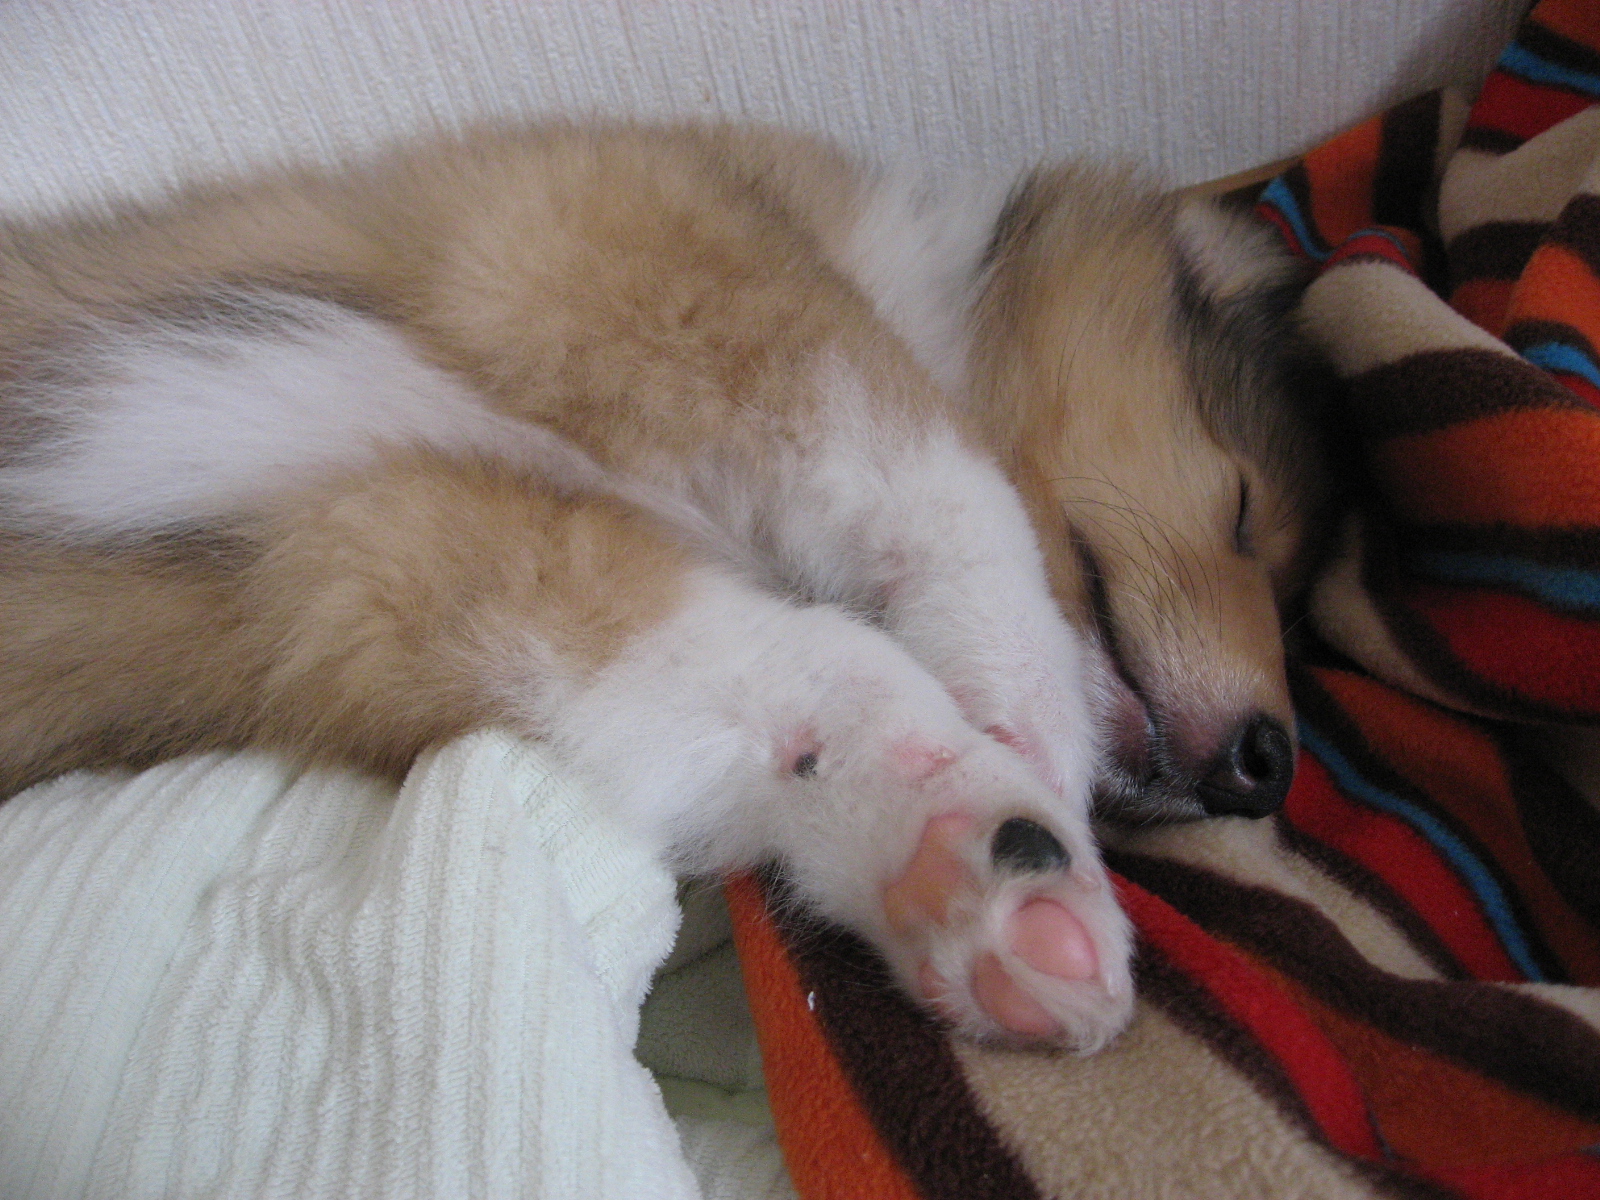 http://www.lucky-dog.jp/weblog/image/IMG_2363.JPG